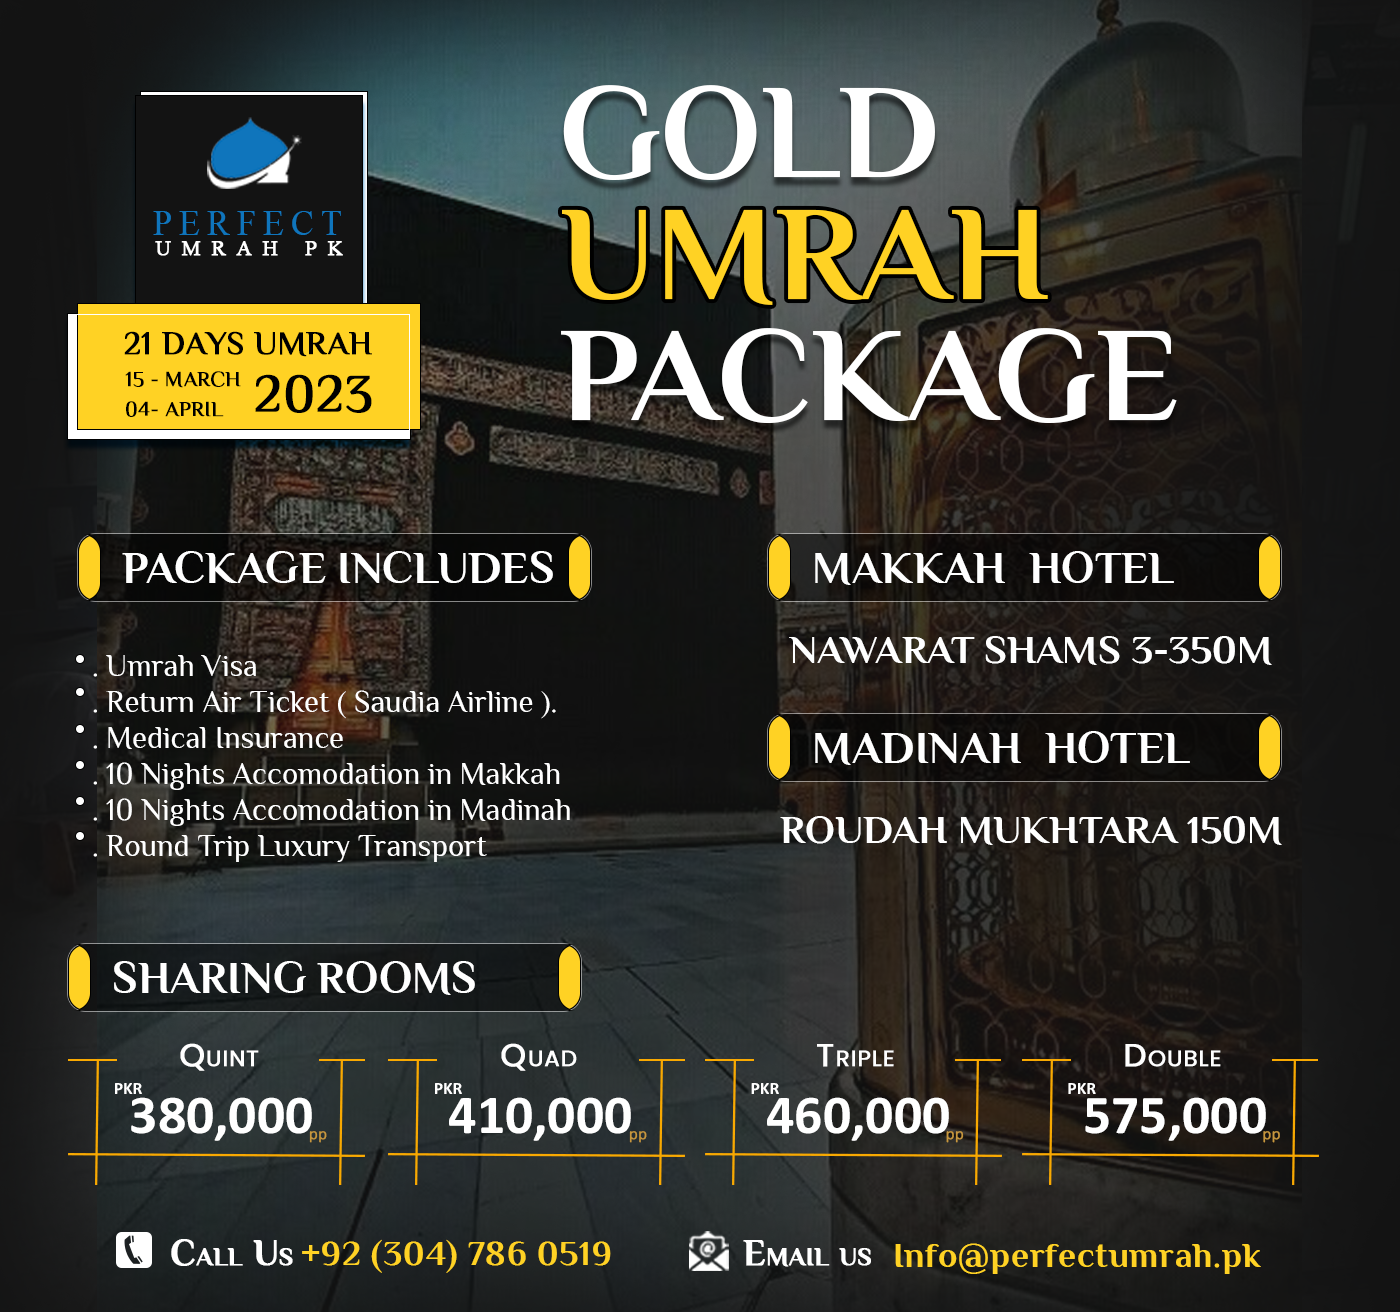 halijah travel umrah 2023 packages